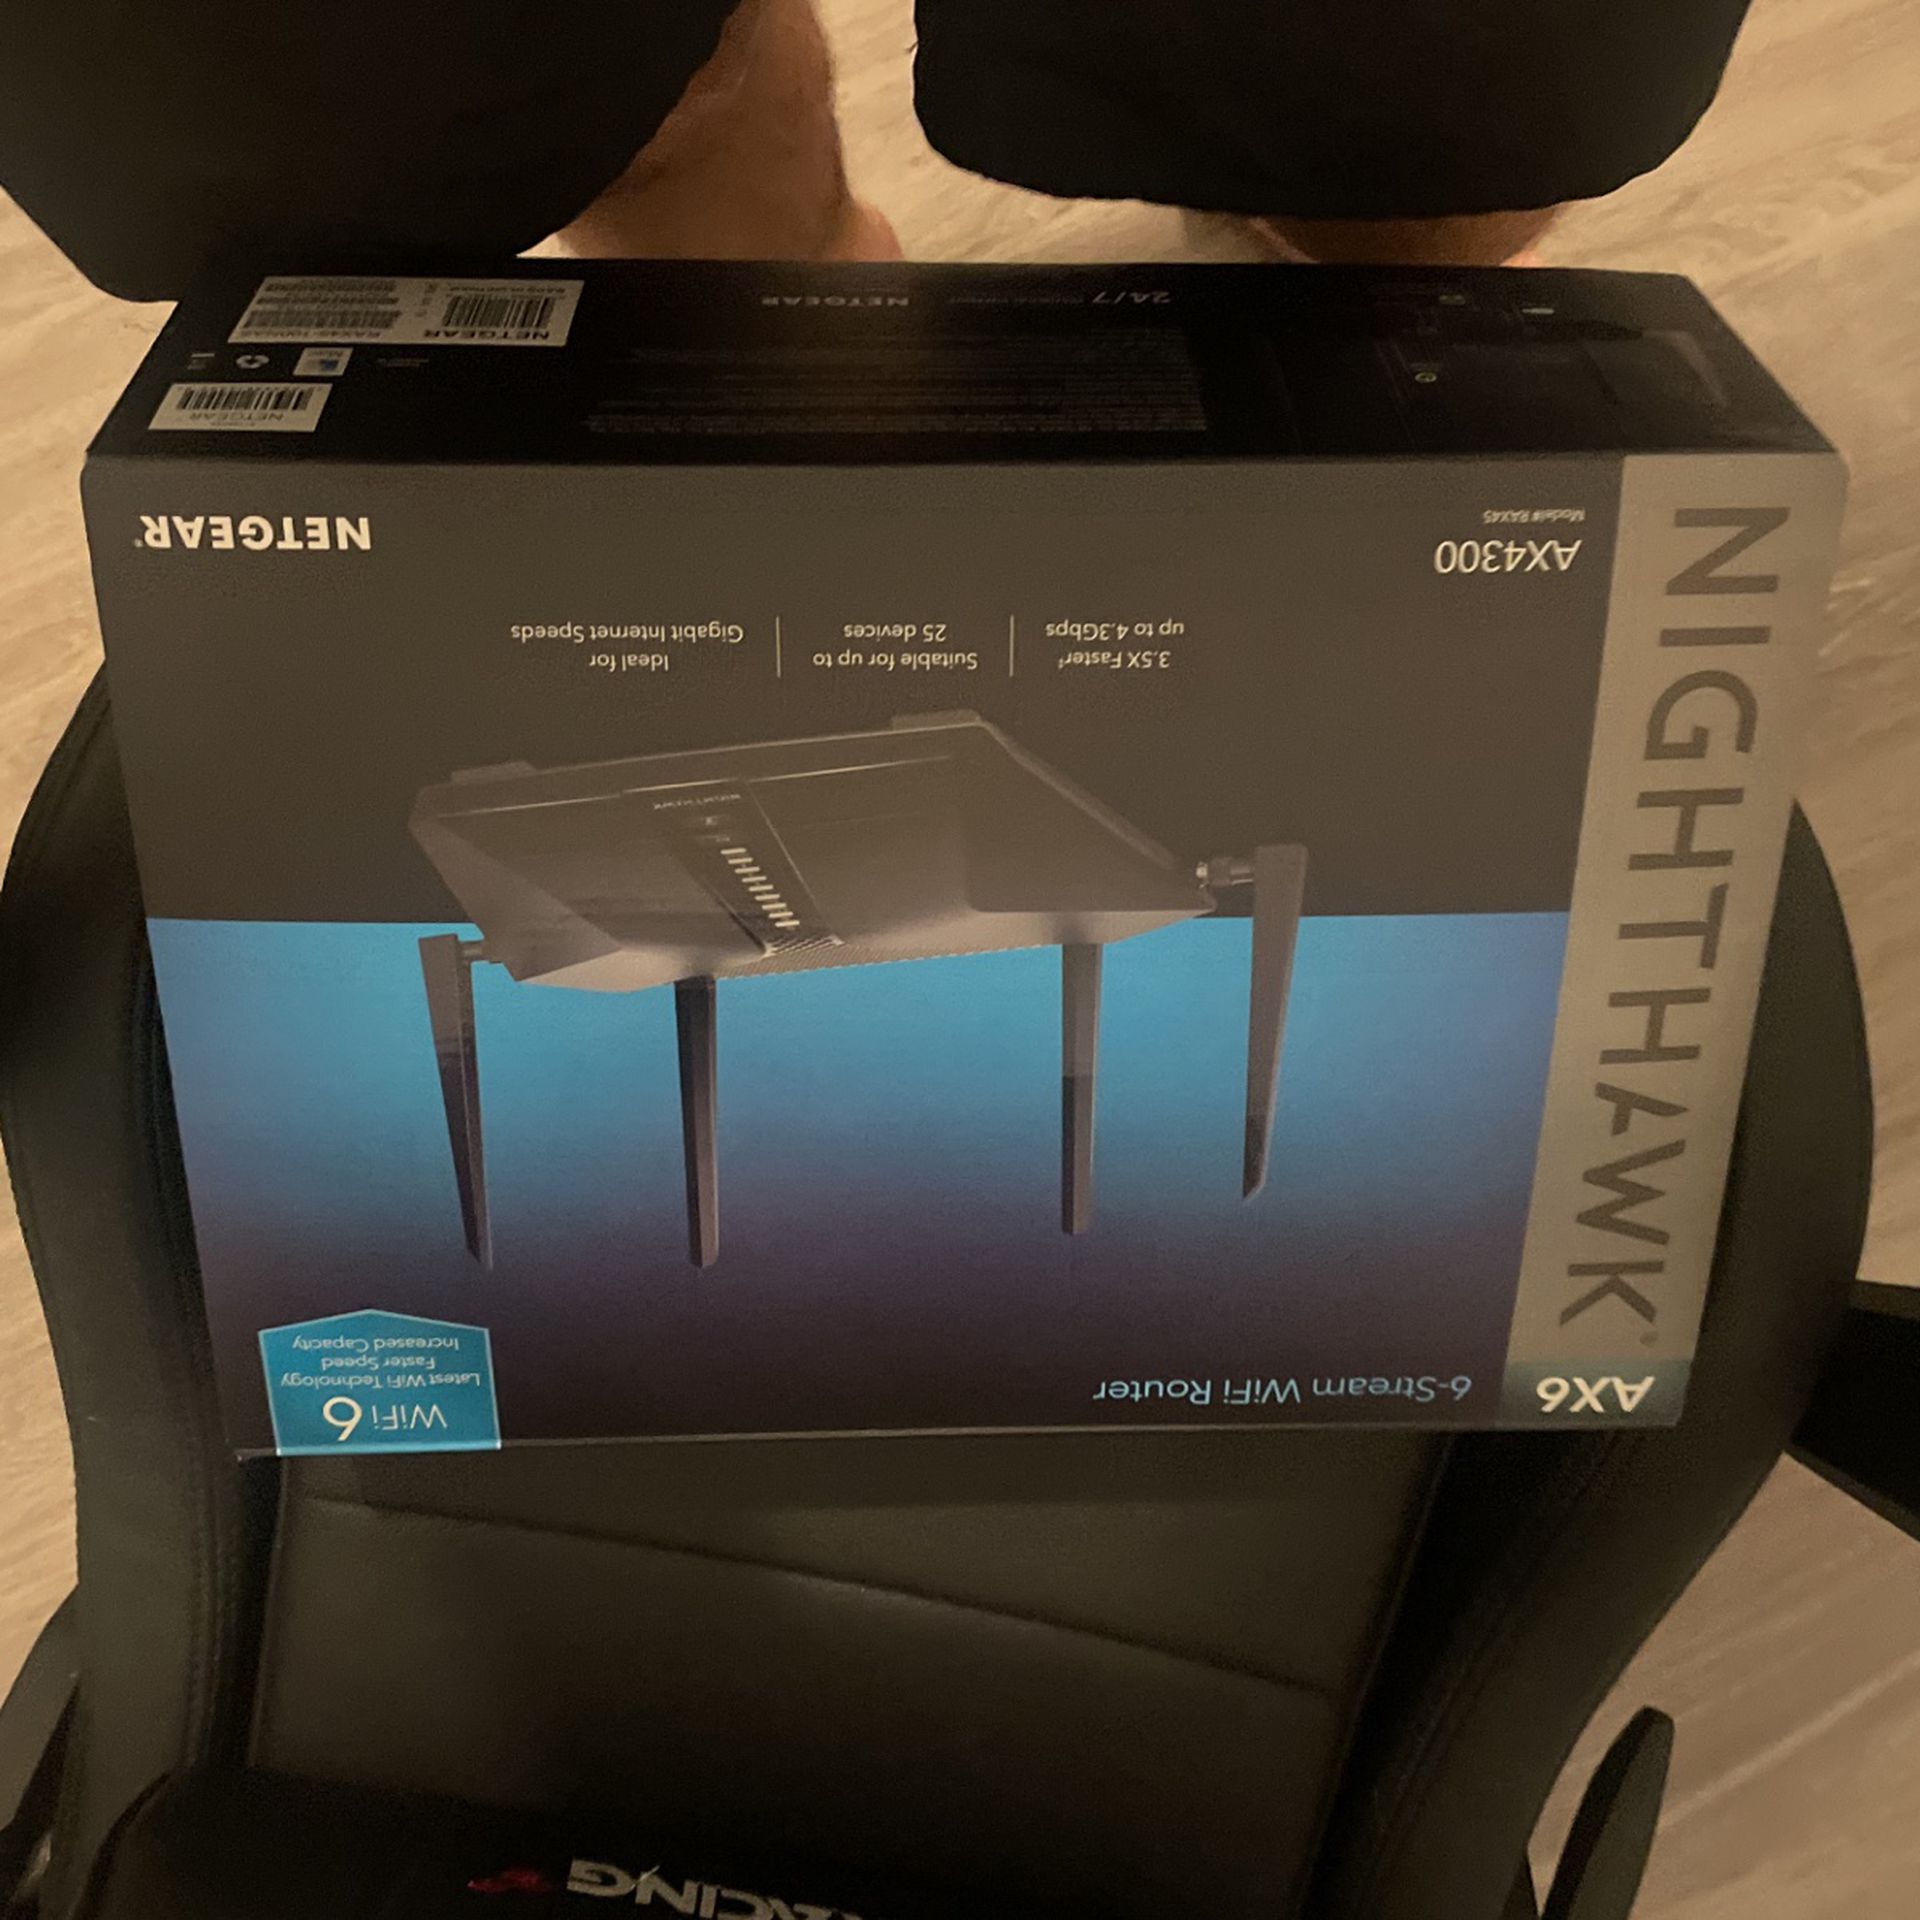 Nighthawk 6 Stream Wi-Fi Router AX4300